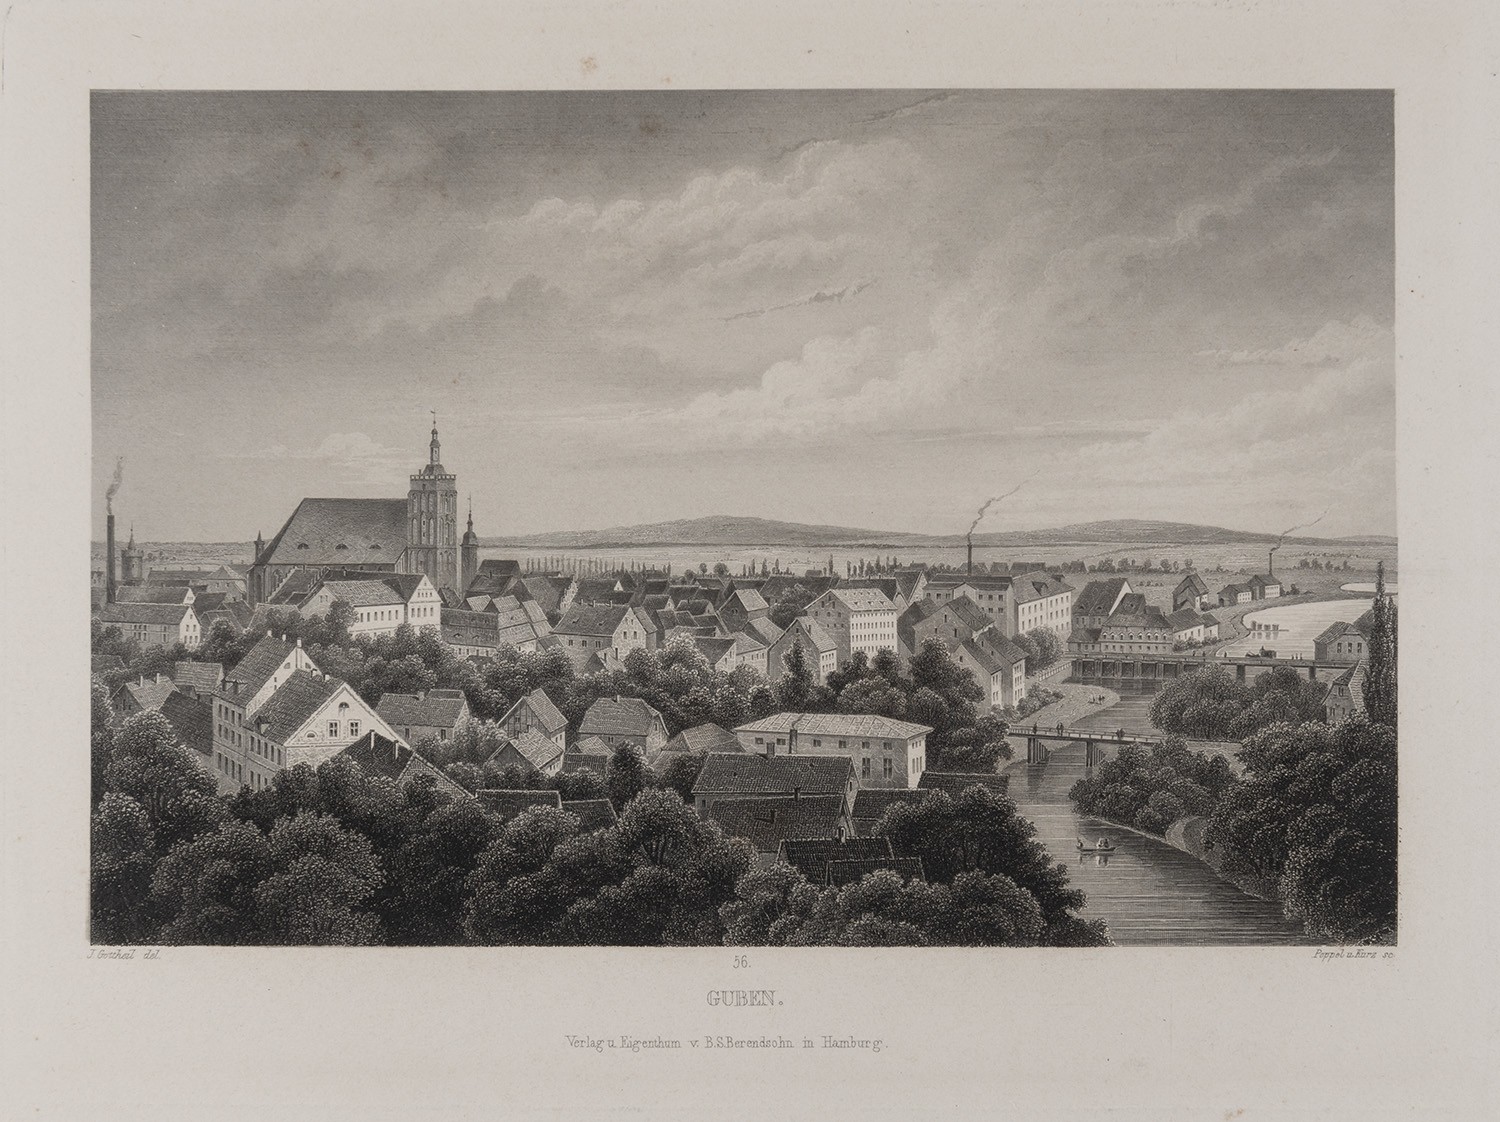 Guben: Stadtansicht von Nordwesten (Brandenburgisches Album, Blatt 56) (Landesgeschichtliche Vereinigung für die Mark Brandenburg e.V., Archiv CC BY)